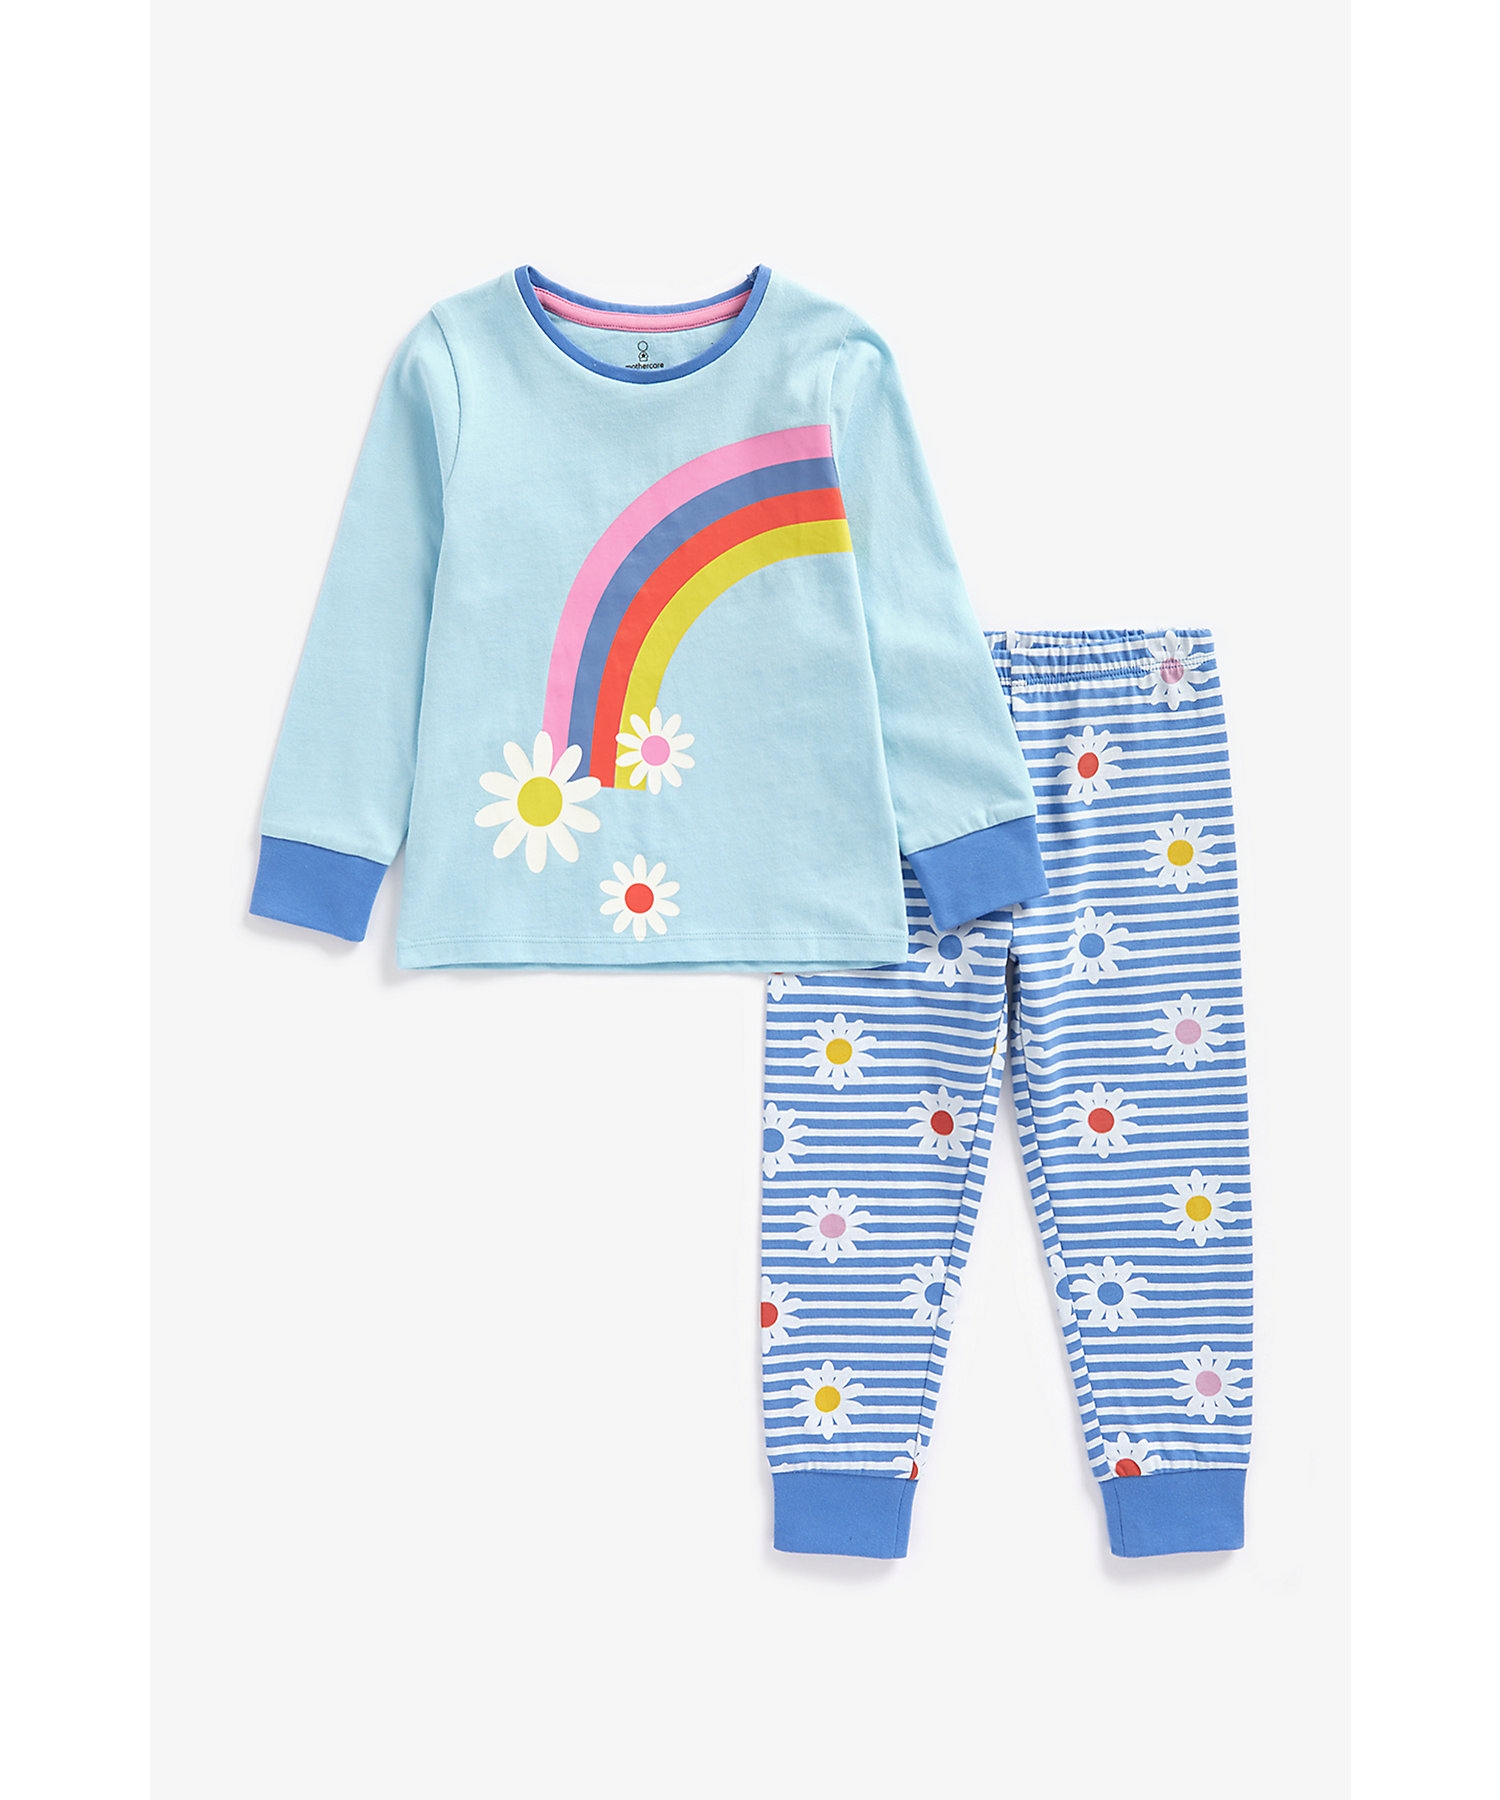 Girls Full Sleeves Pyjama Set Rainbow Design-Multicolor